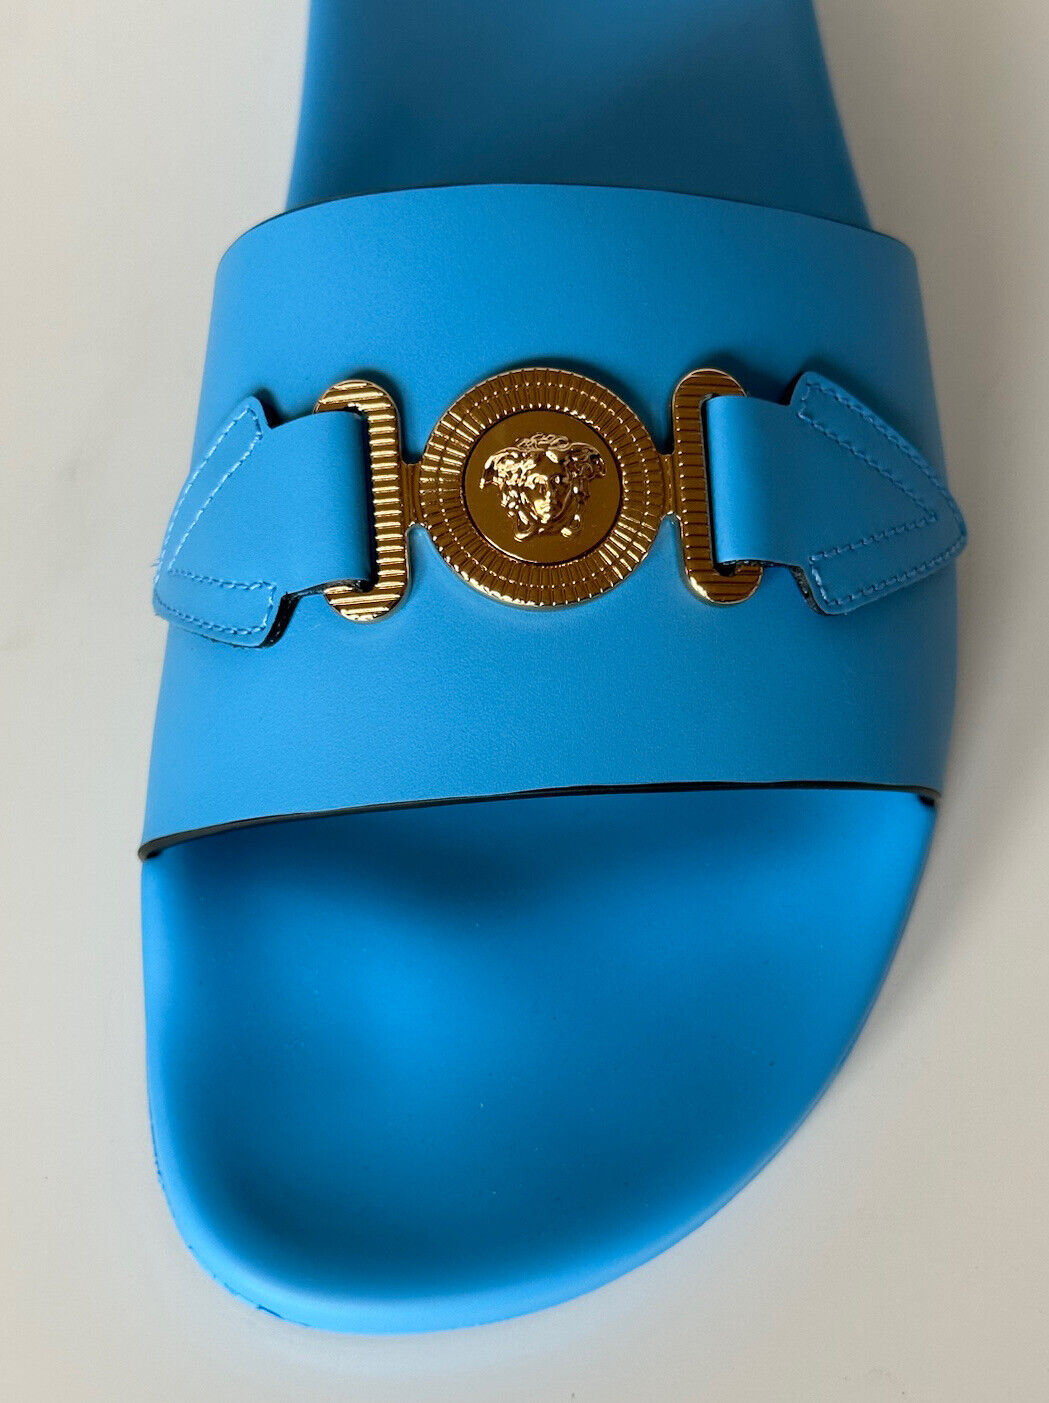 NIB 650 долларов США Versace Gold Medusa Кожаные/резиновые сандалии Синие 13 США (46) 1004983 IT